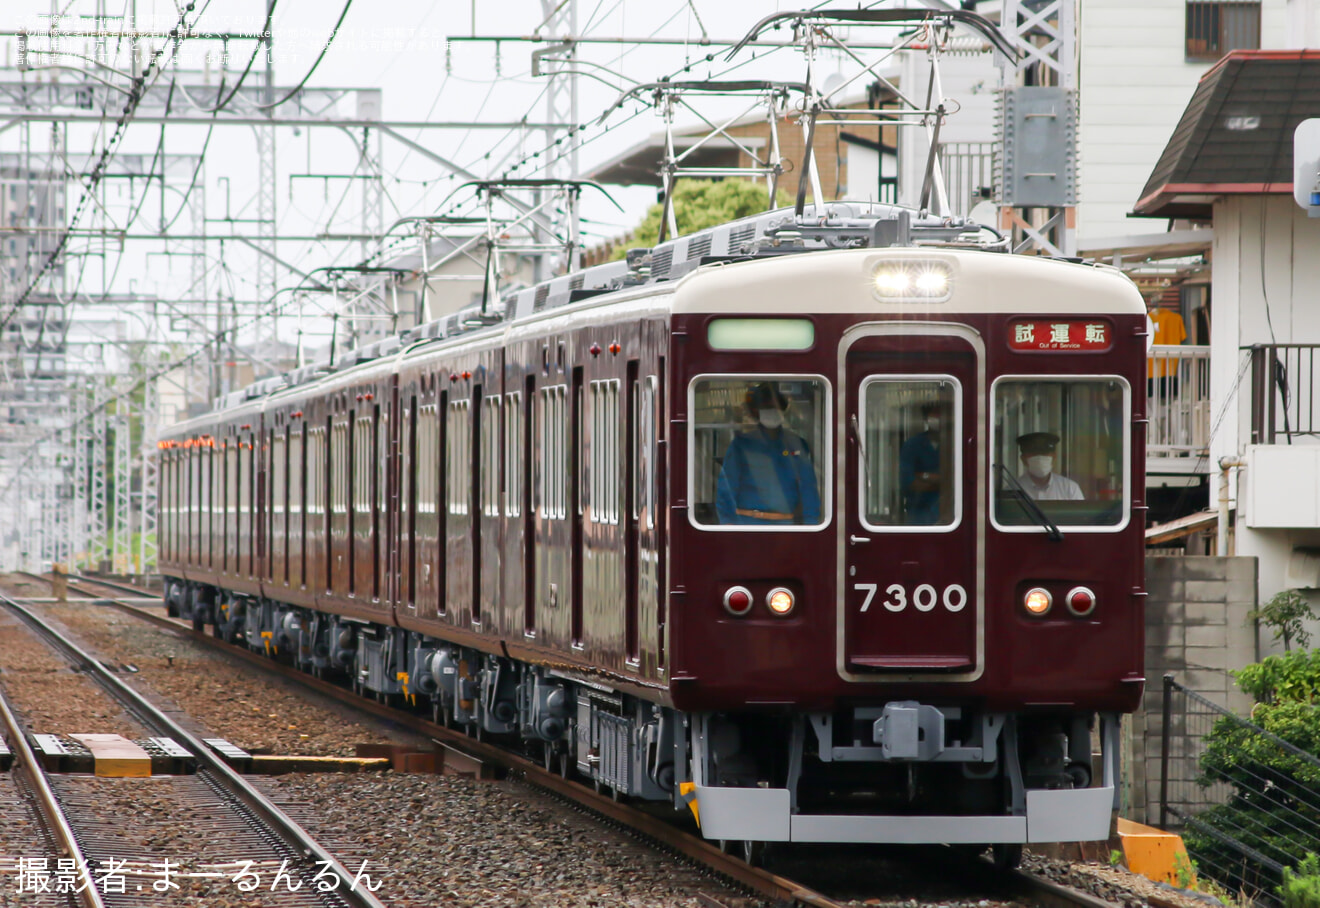 【阪急】17年ぶり本線走行のC#7851を含んだ7300系7300F試運転の拡大写真